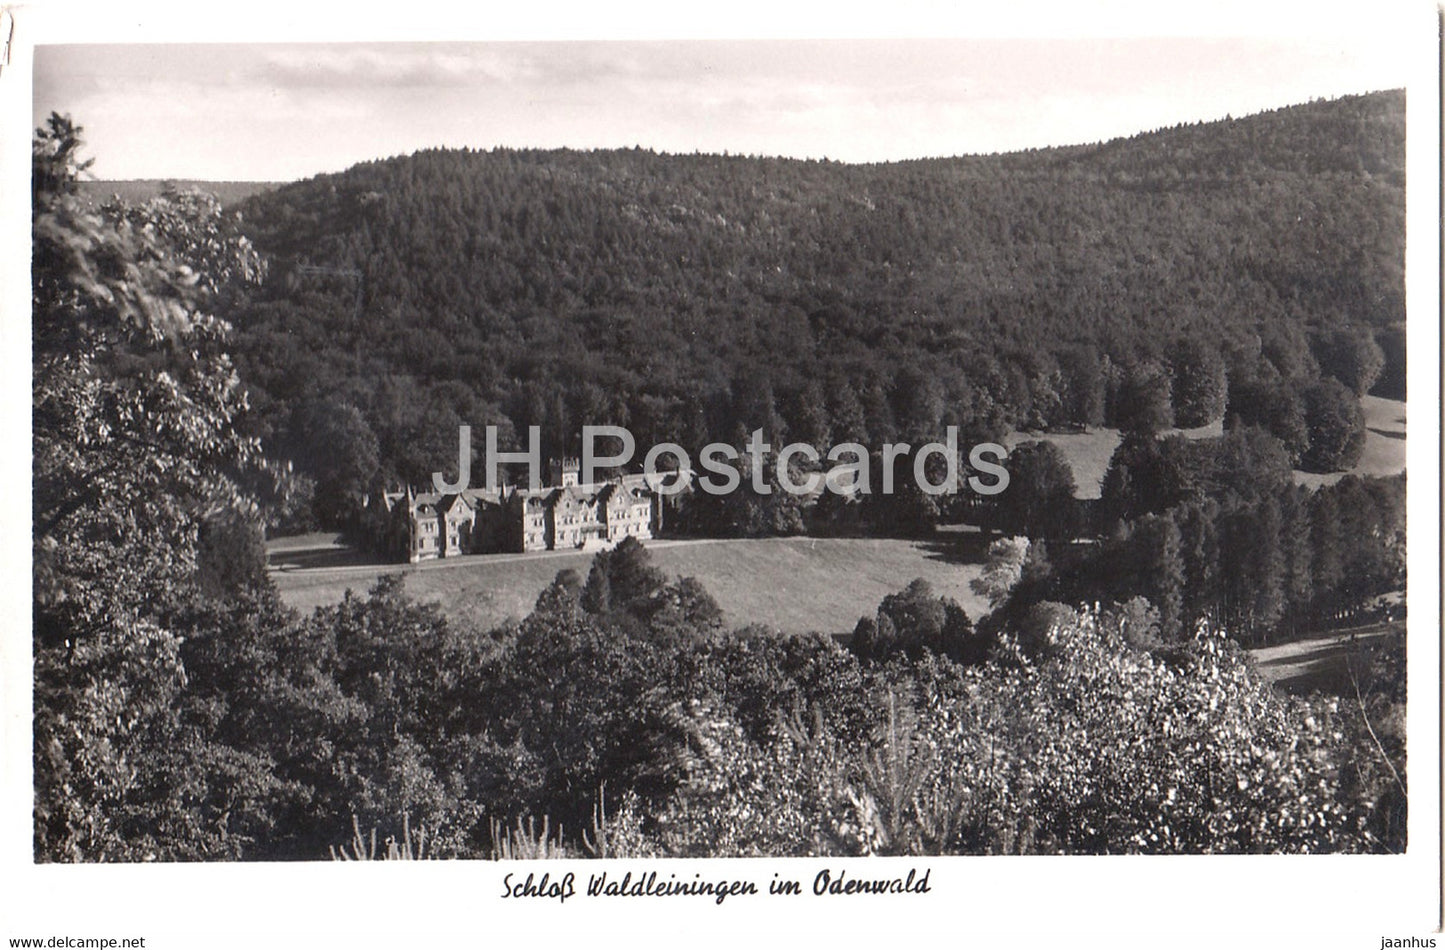 Schloss Waldleiningen im Odenwald - castle - Germany - unused - JH Postcards